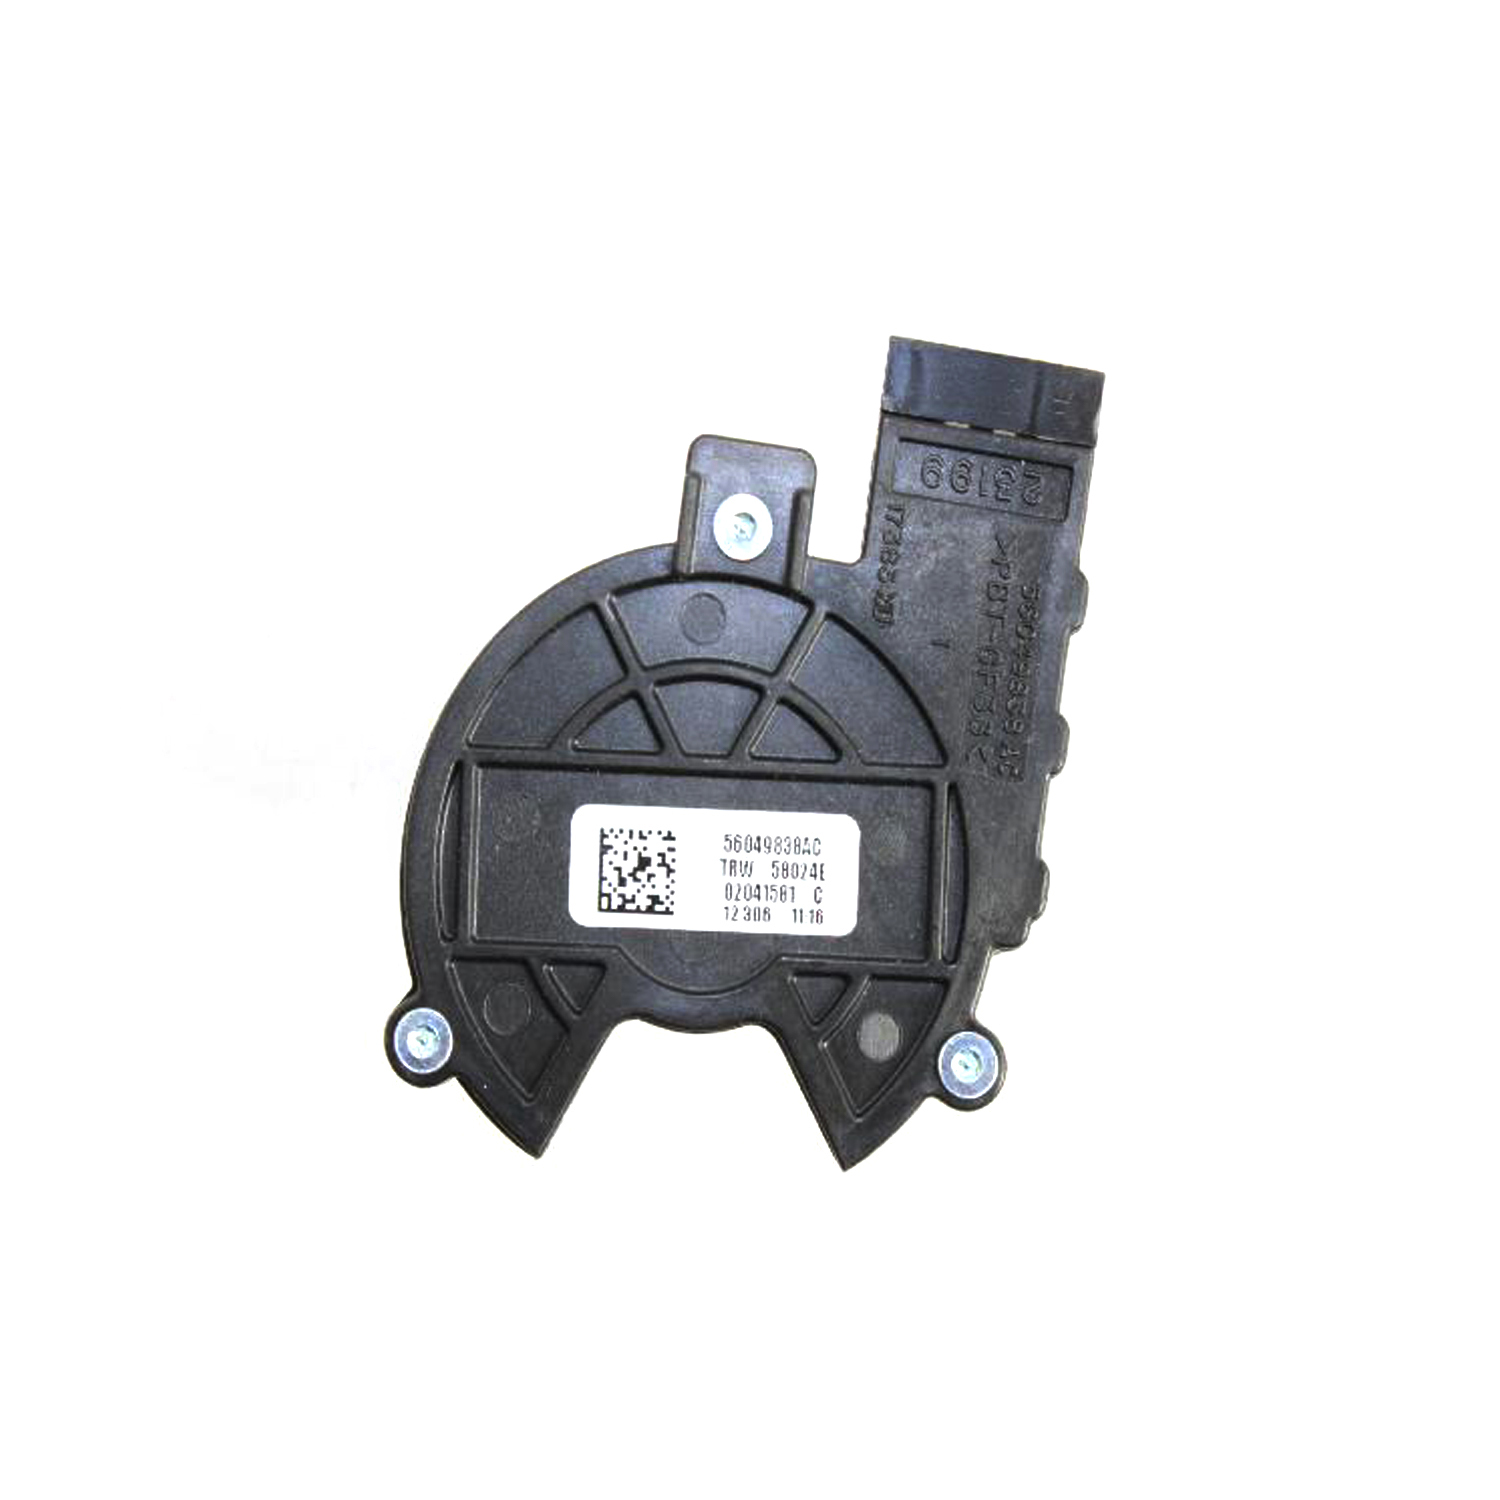 MOPAR PARTS - Ignition Switch - MOP 56049838AC